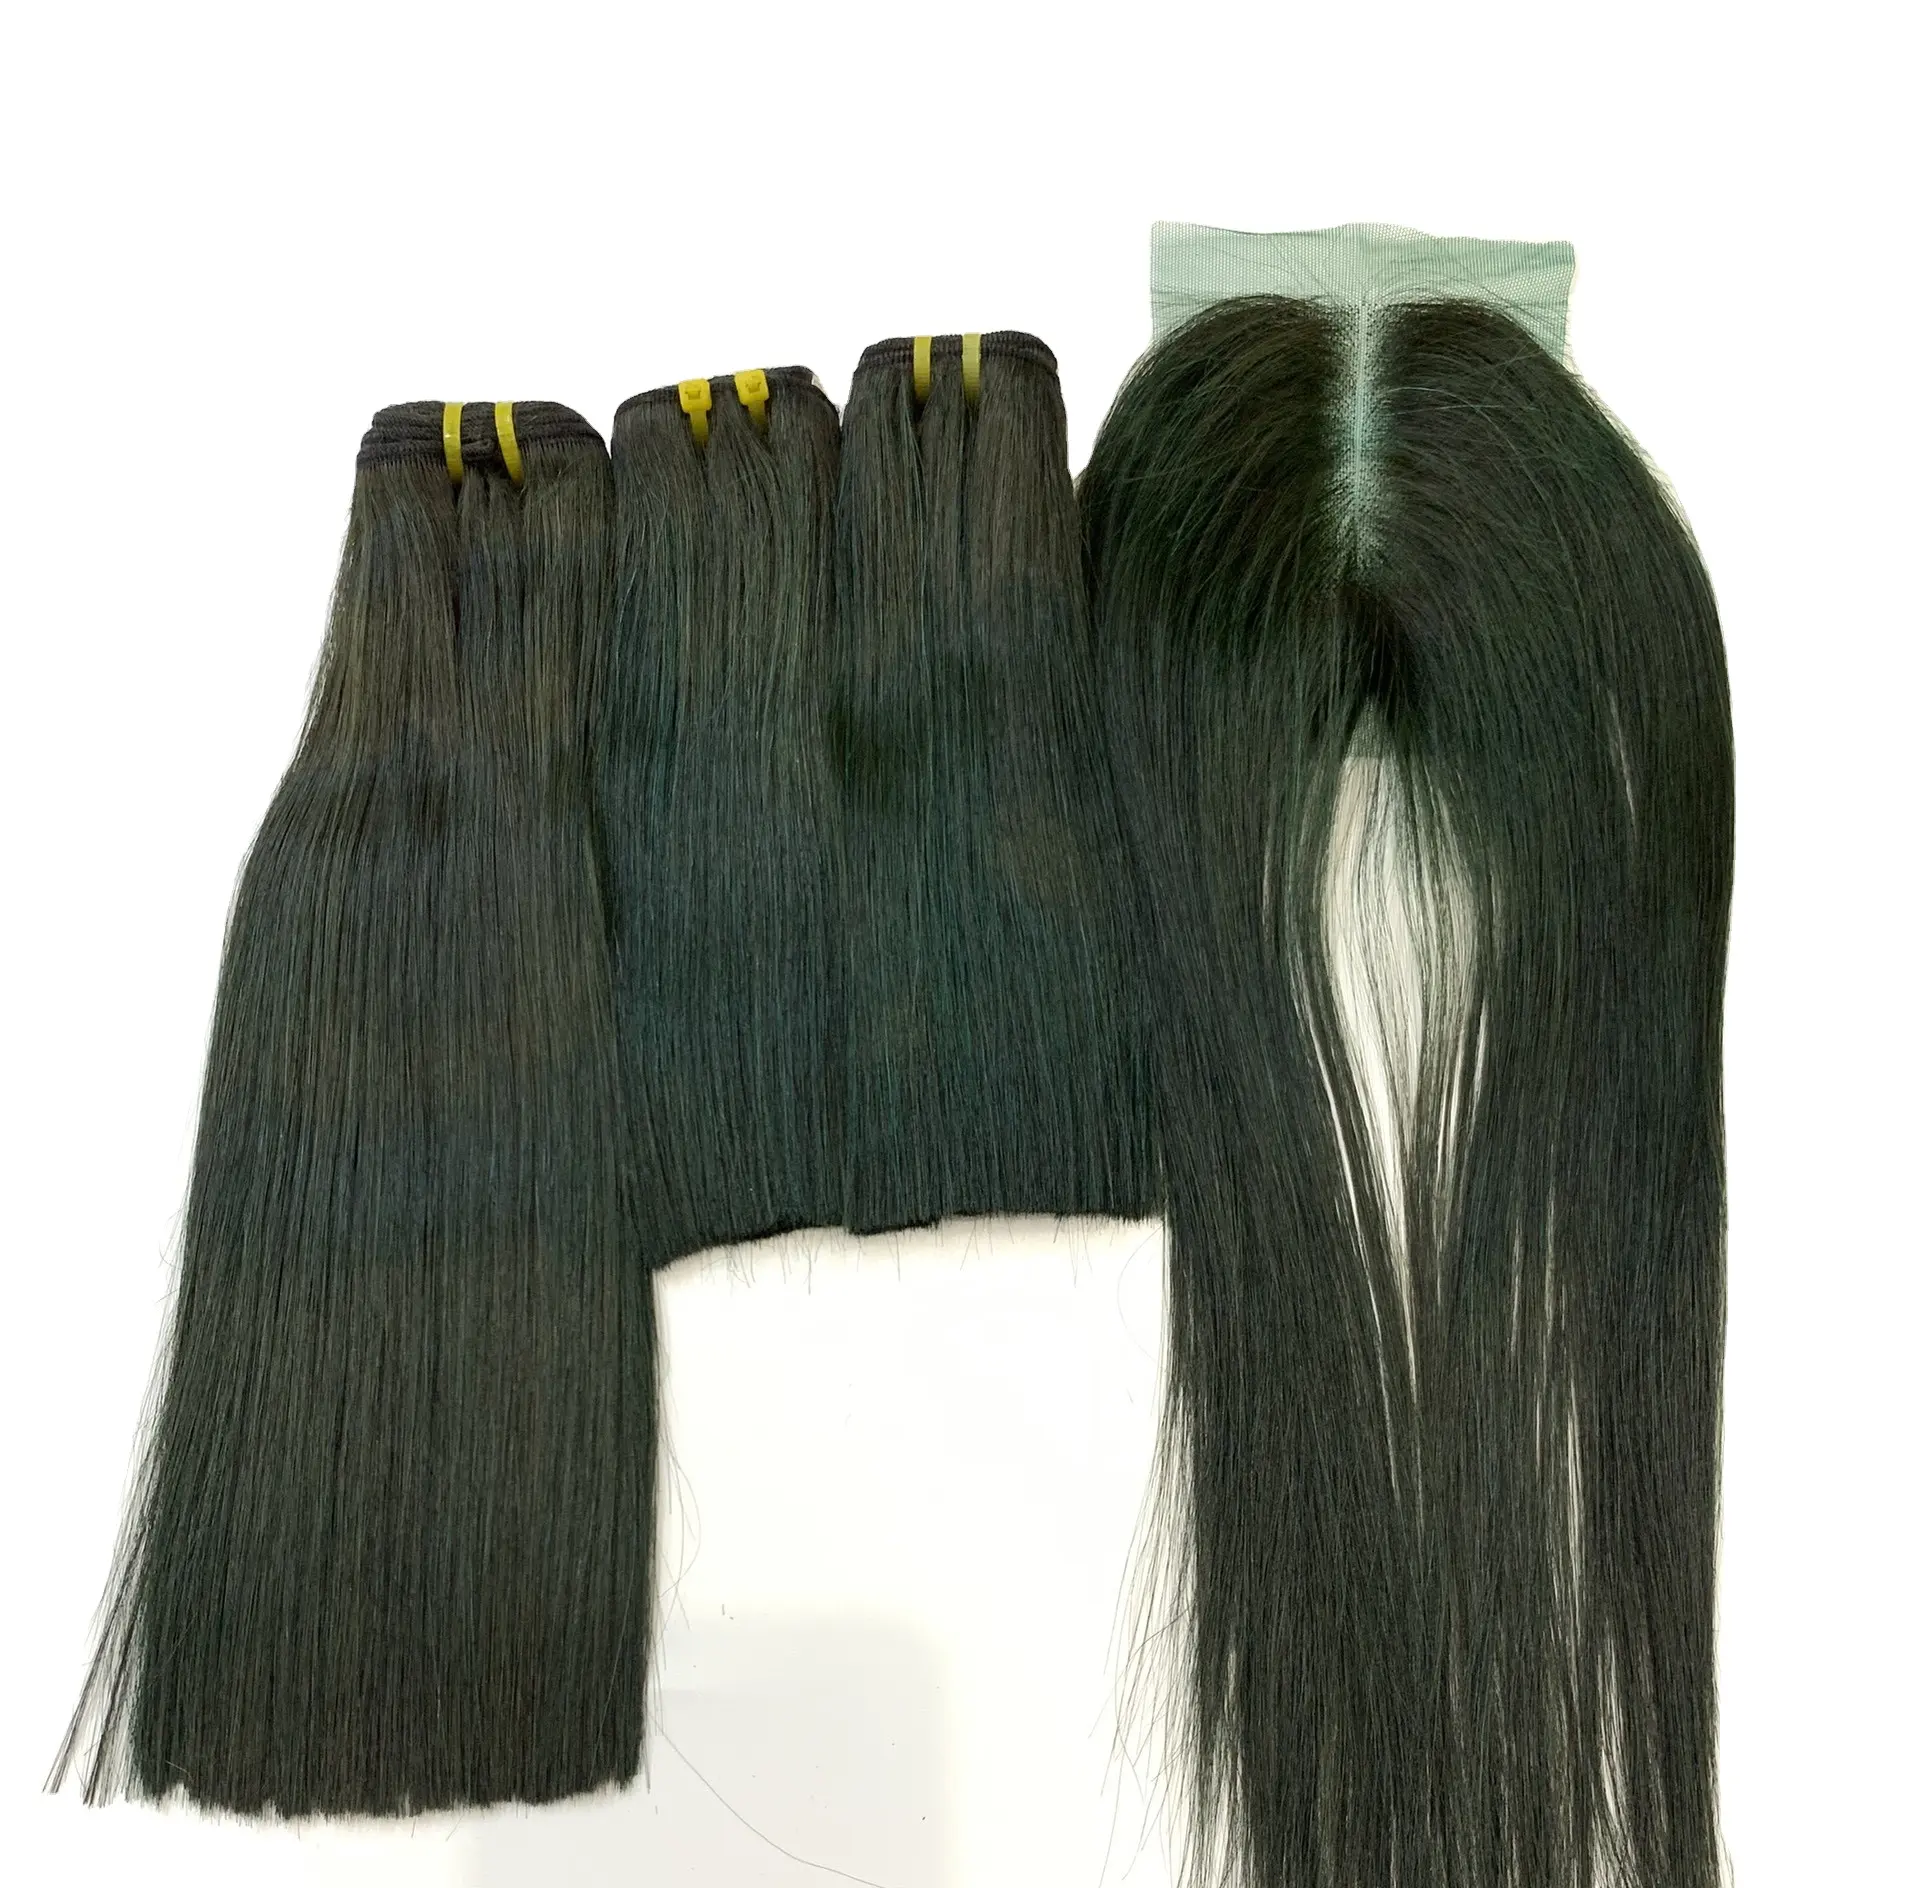 Pacotes de cabelo com fecho, faça cabelo humano cheio 10a 12a grau brasileiro extensão de cabelo liso barato